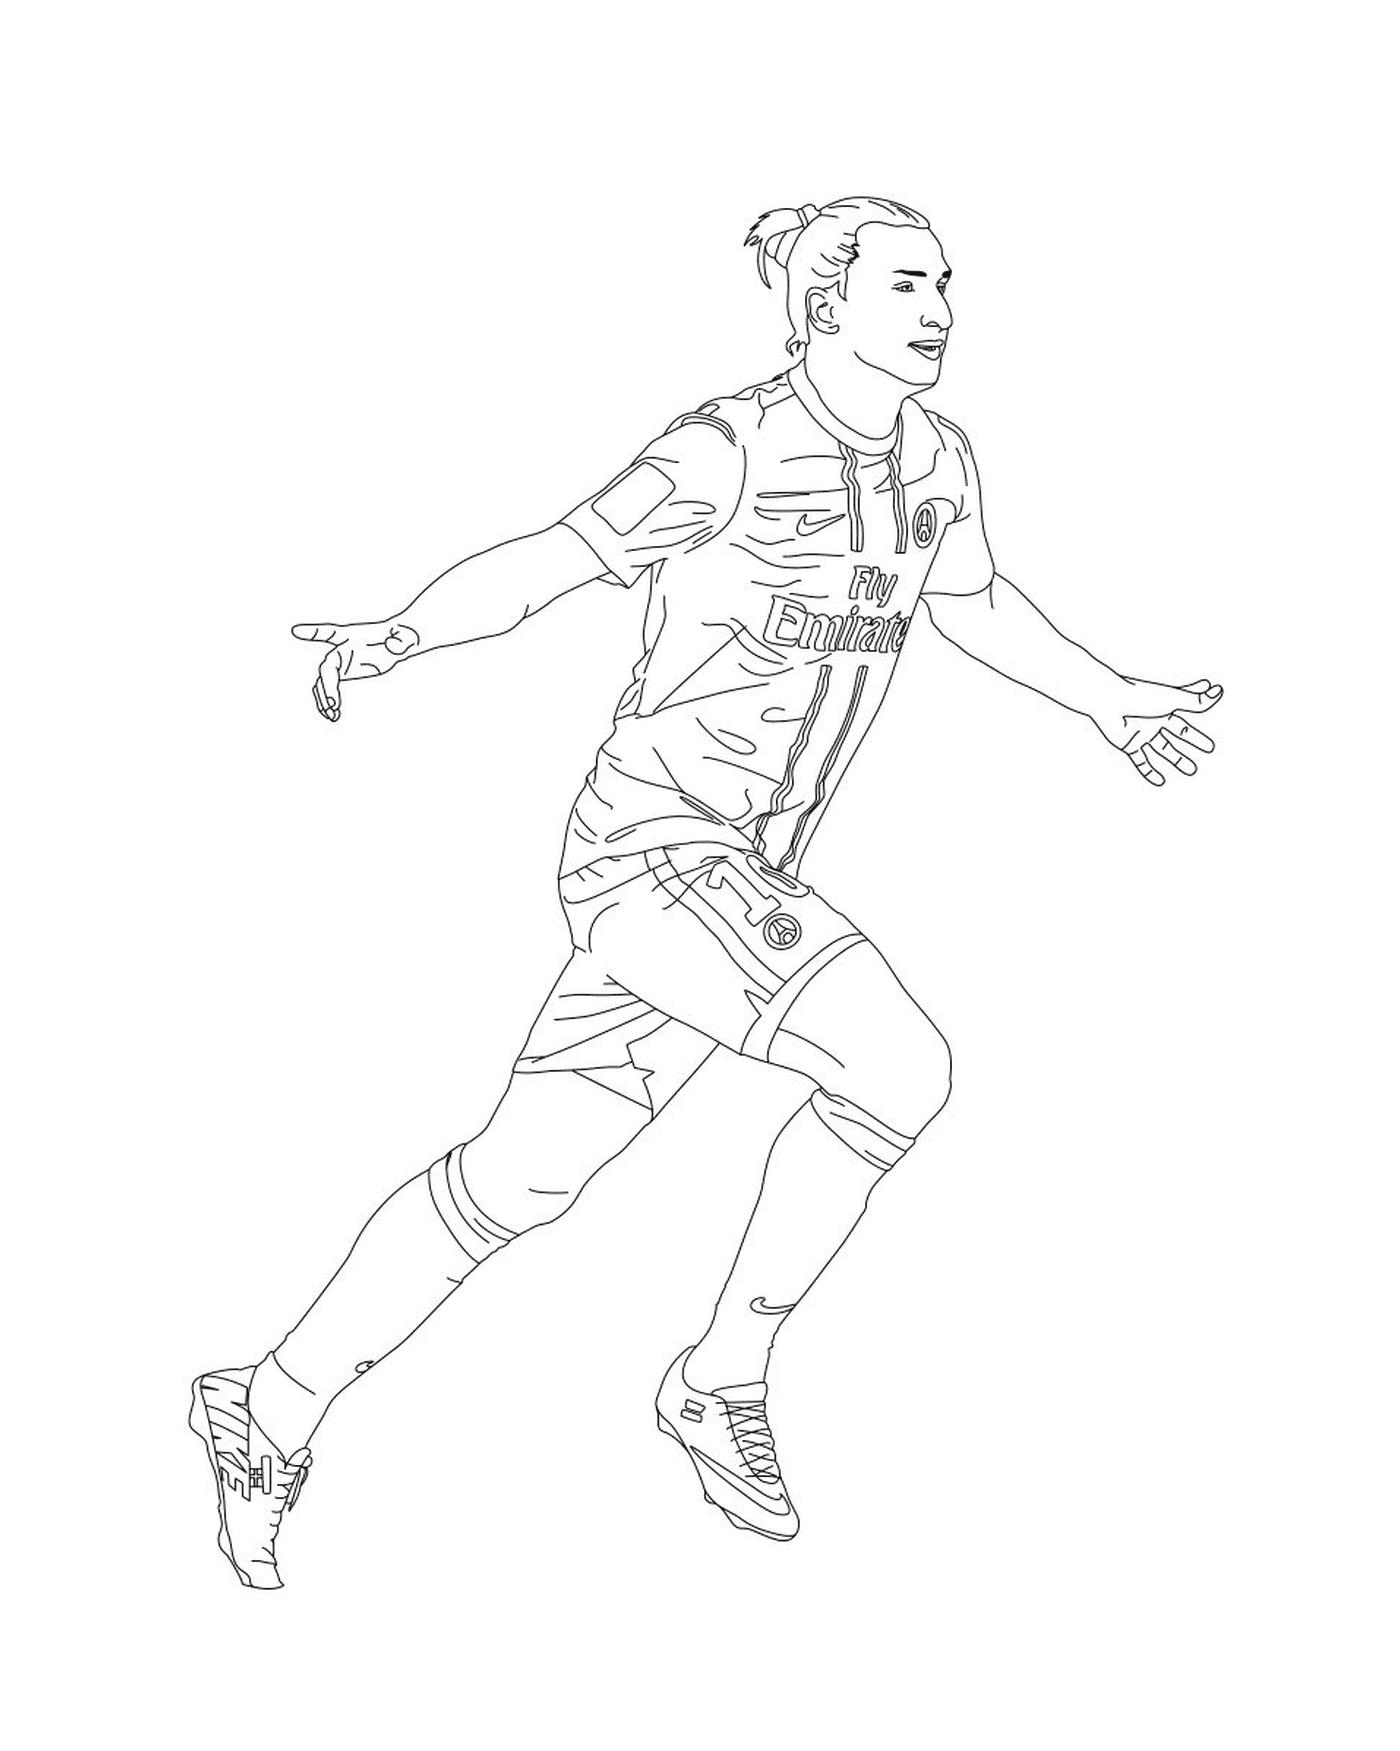  لاعب كرة قدم يركض مع الكرة 